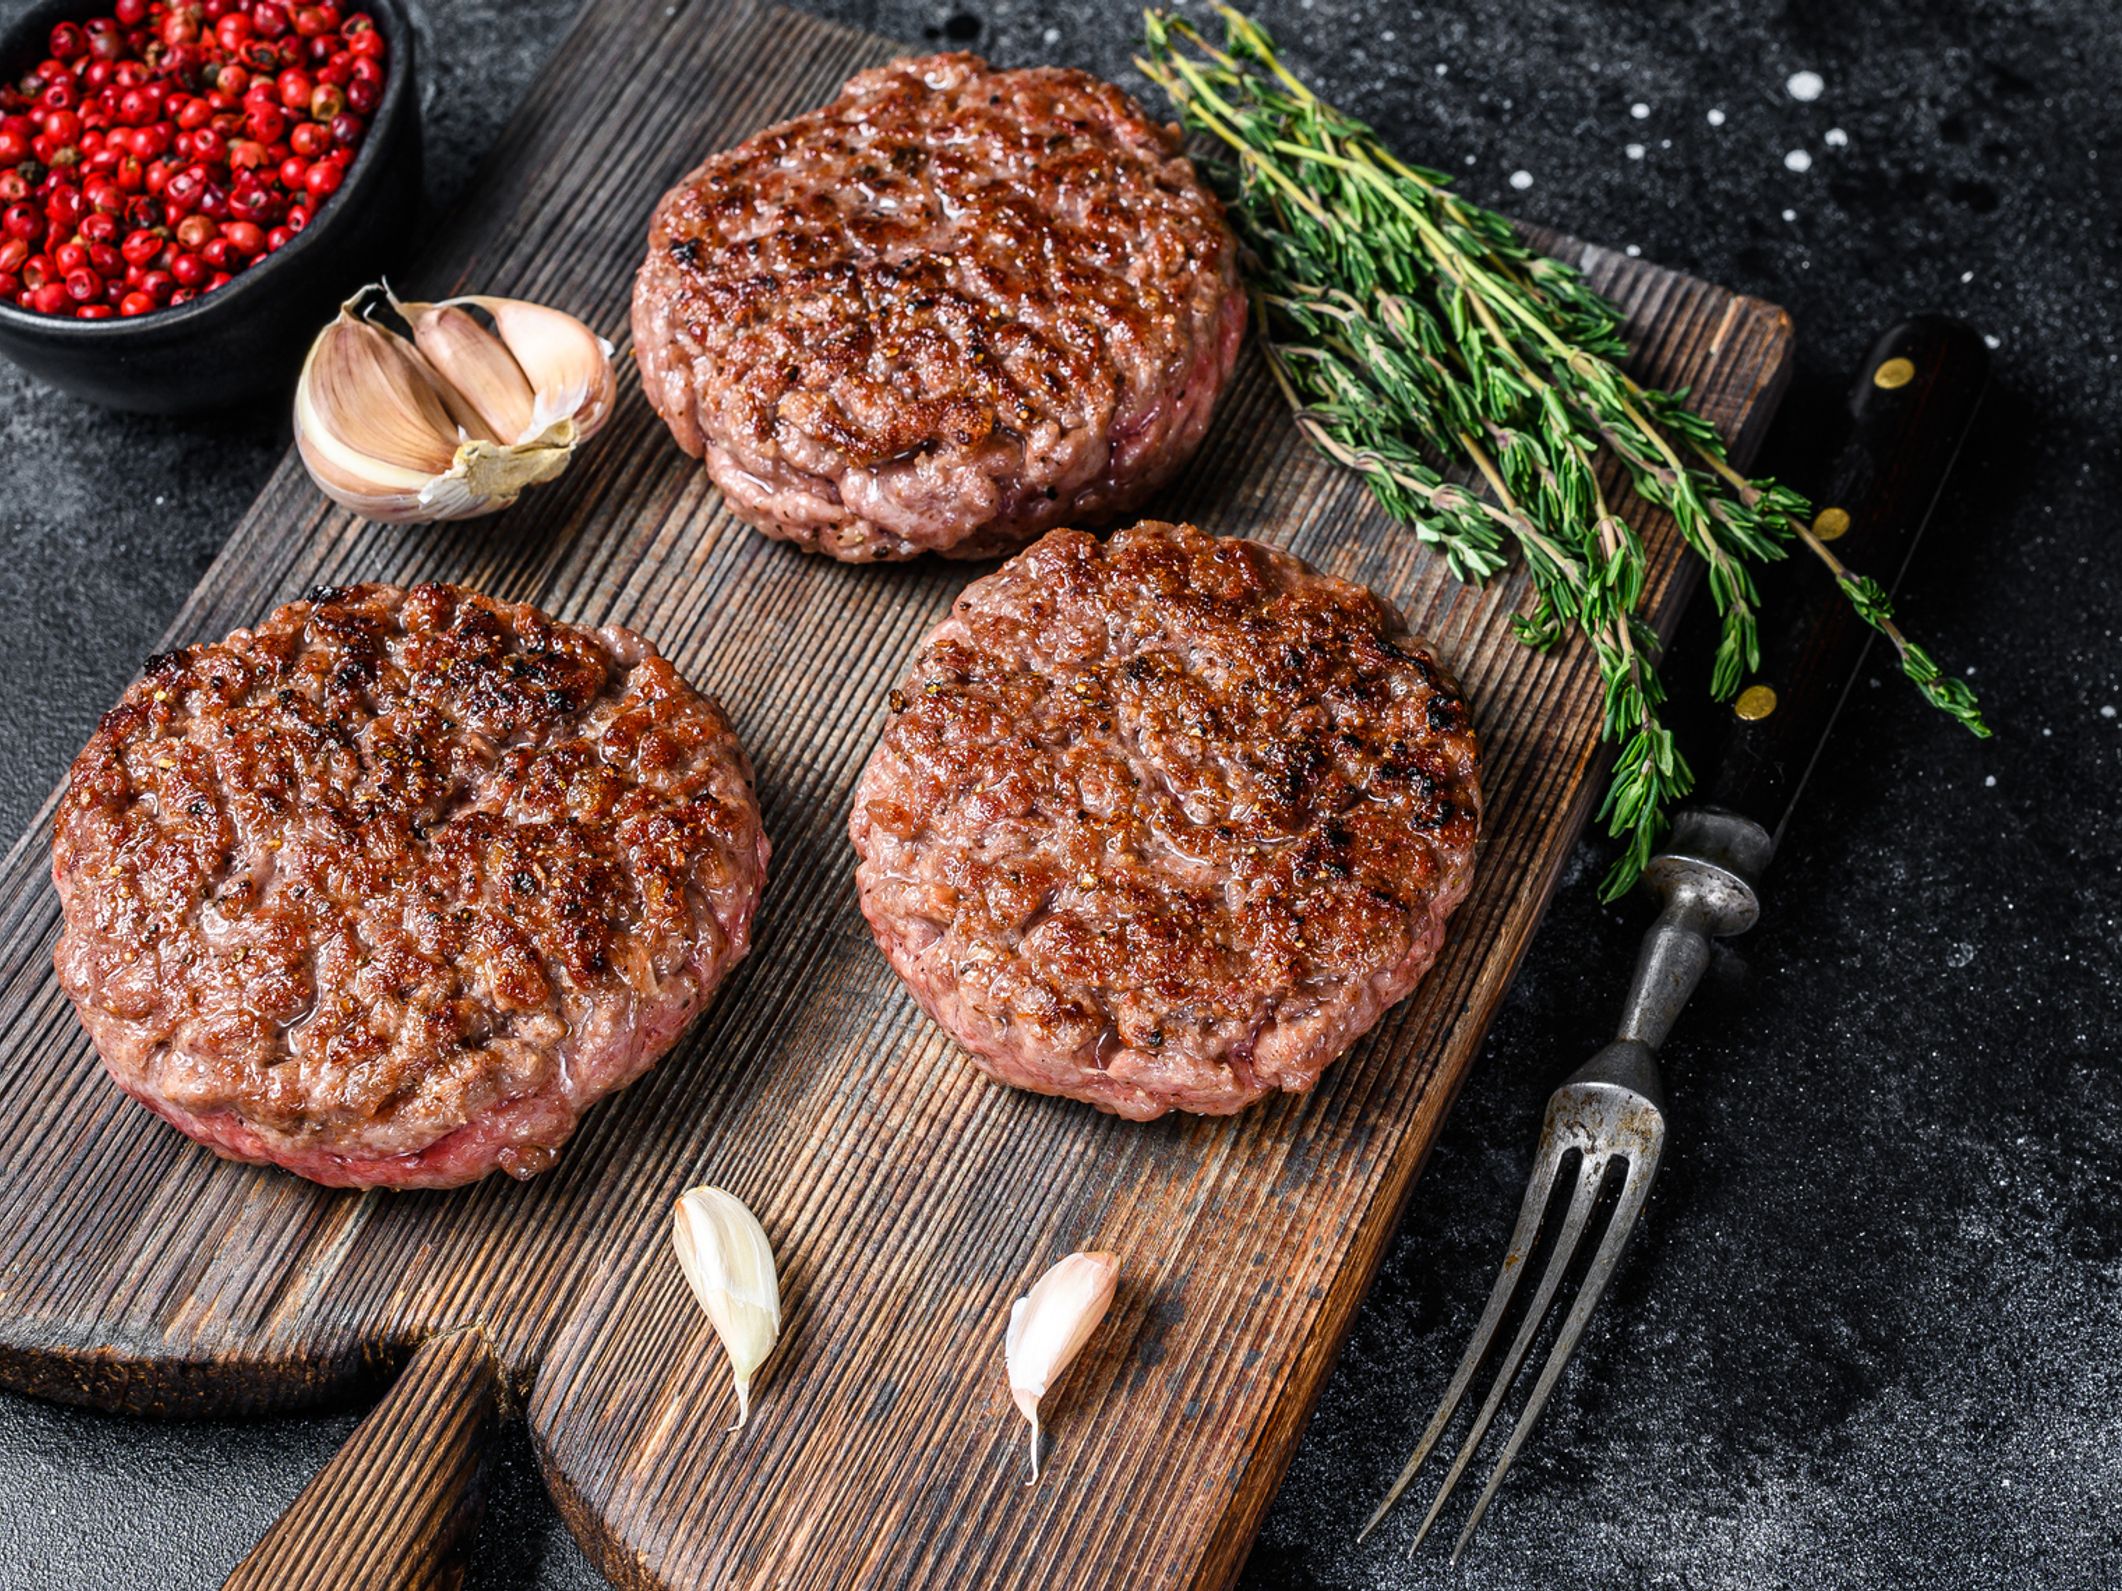 Steaks contaminés : les précautions à prendre avec la viande hachée : Femme  Actuelle Le MAG